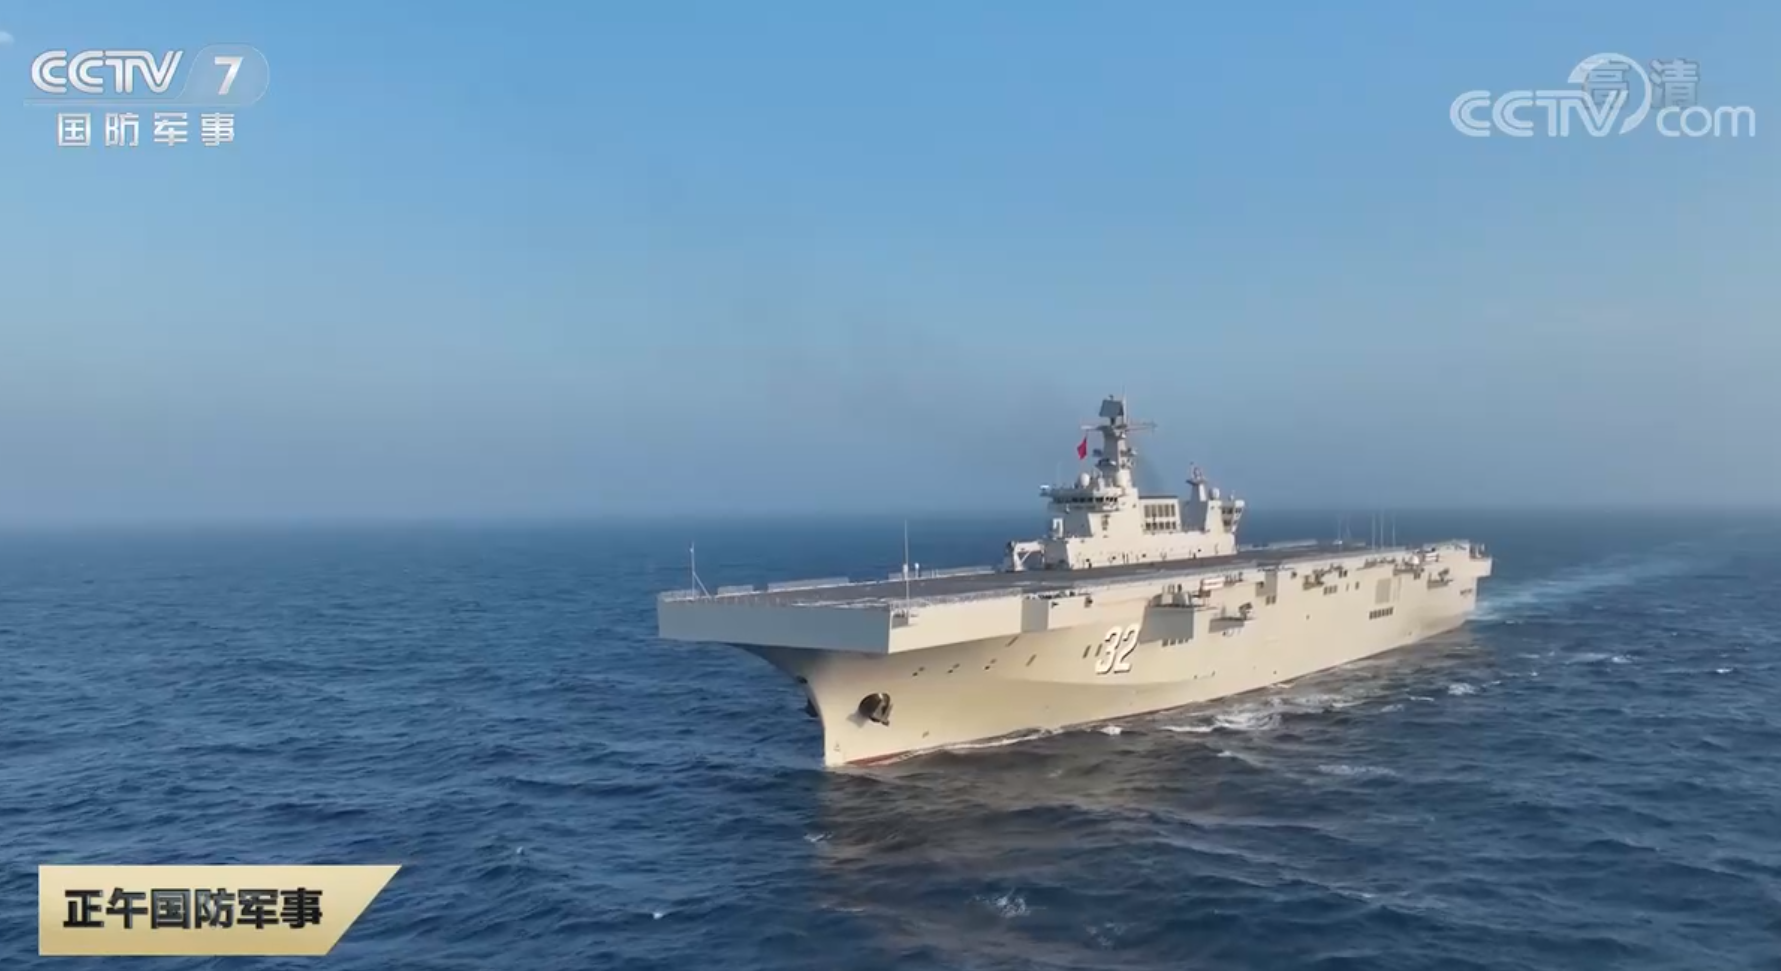 两栖攻击舰广西舰开展基础性训练。图片来源：央视截图